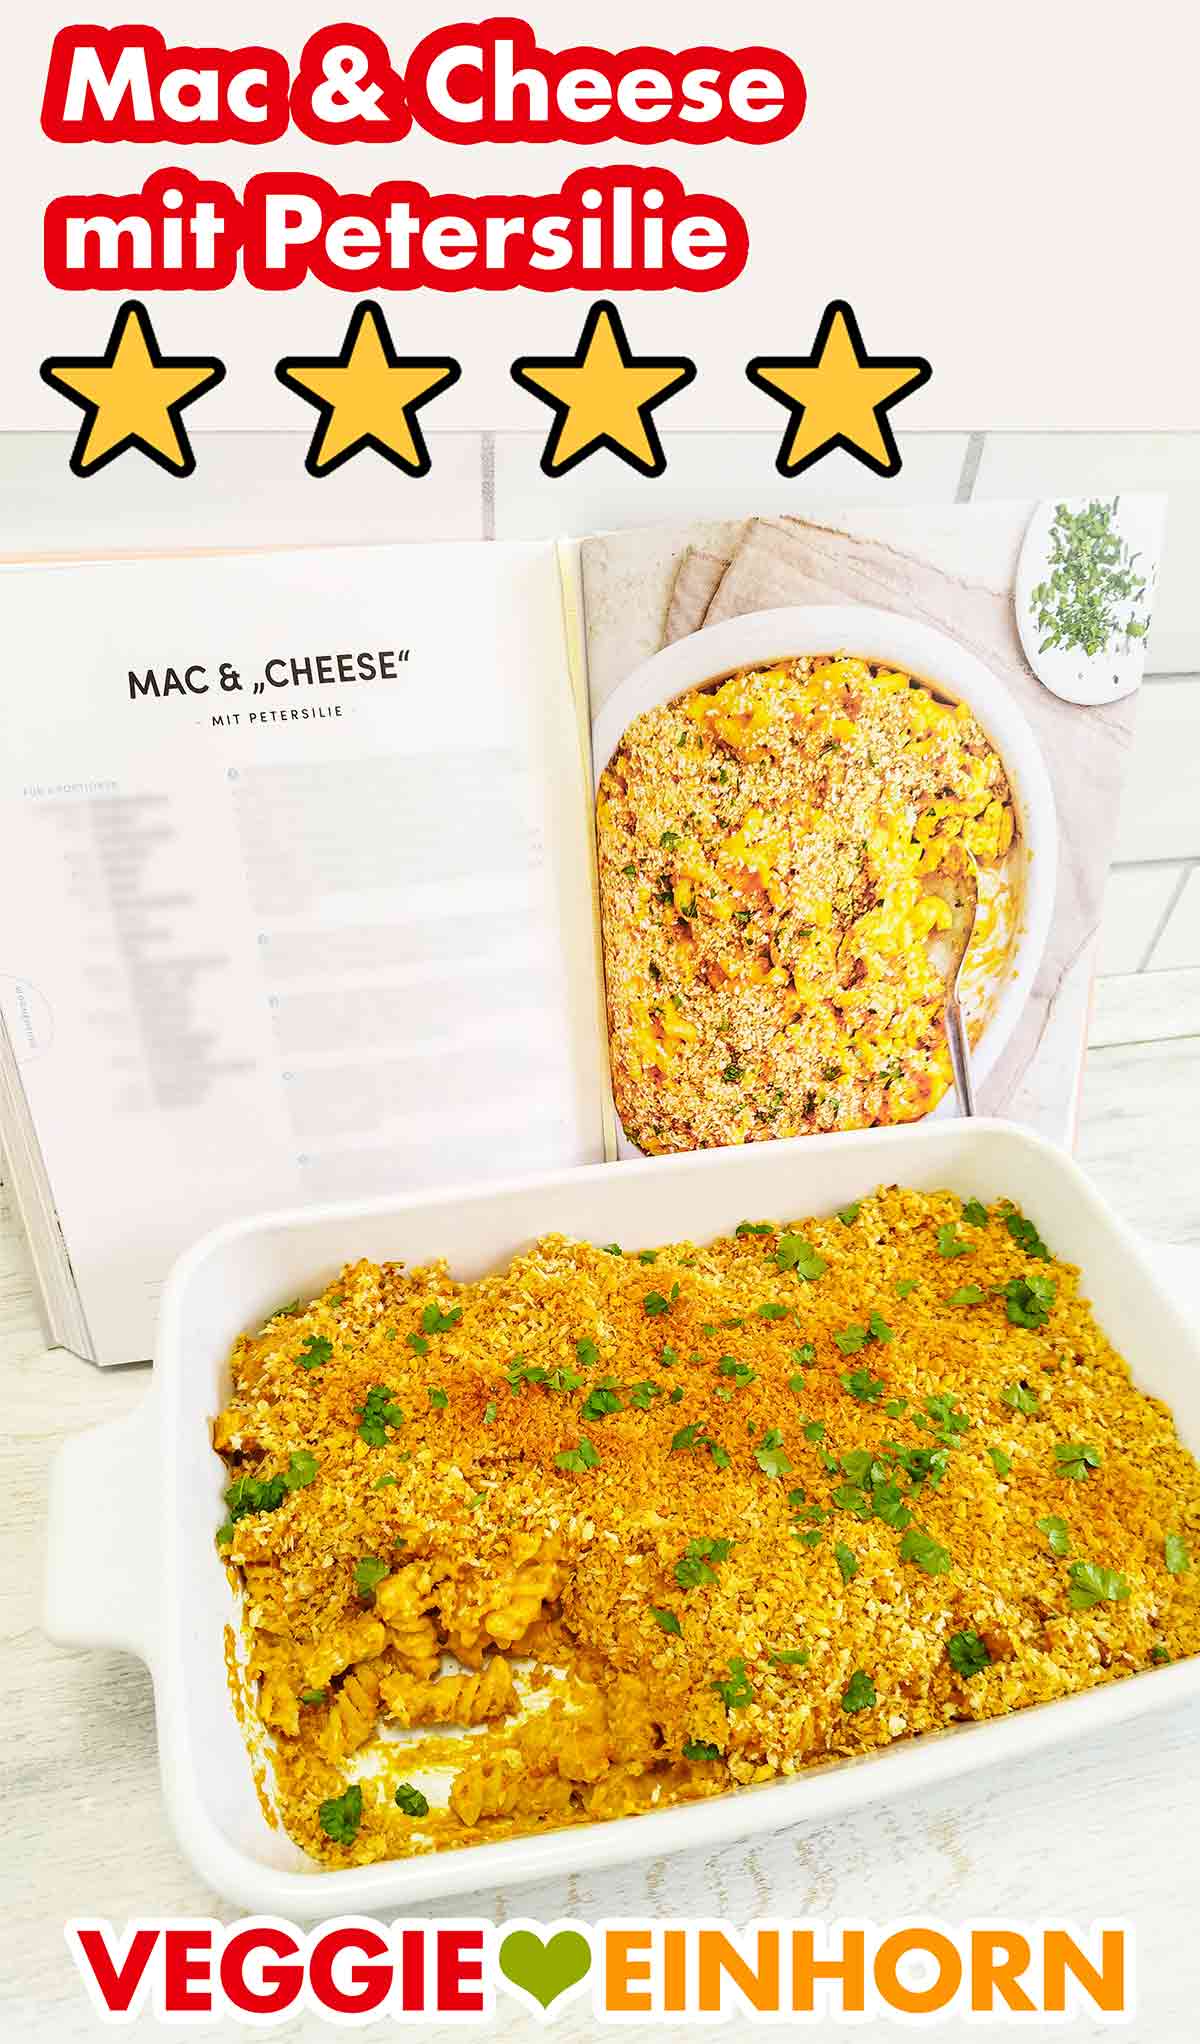 Vegane Mac and Cheese mit Petersilie aus dem Kochbuch Voll Vegan von Edeka